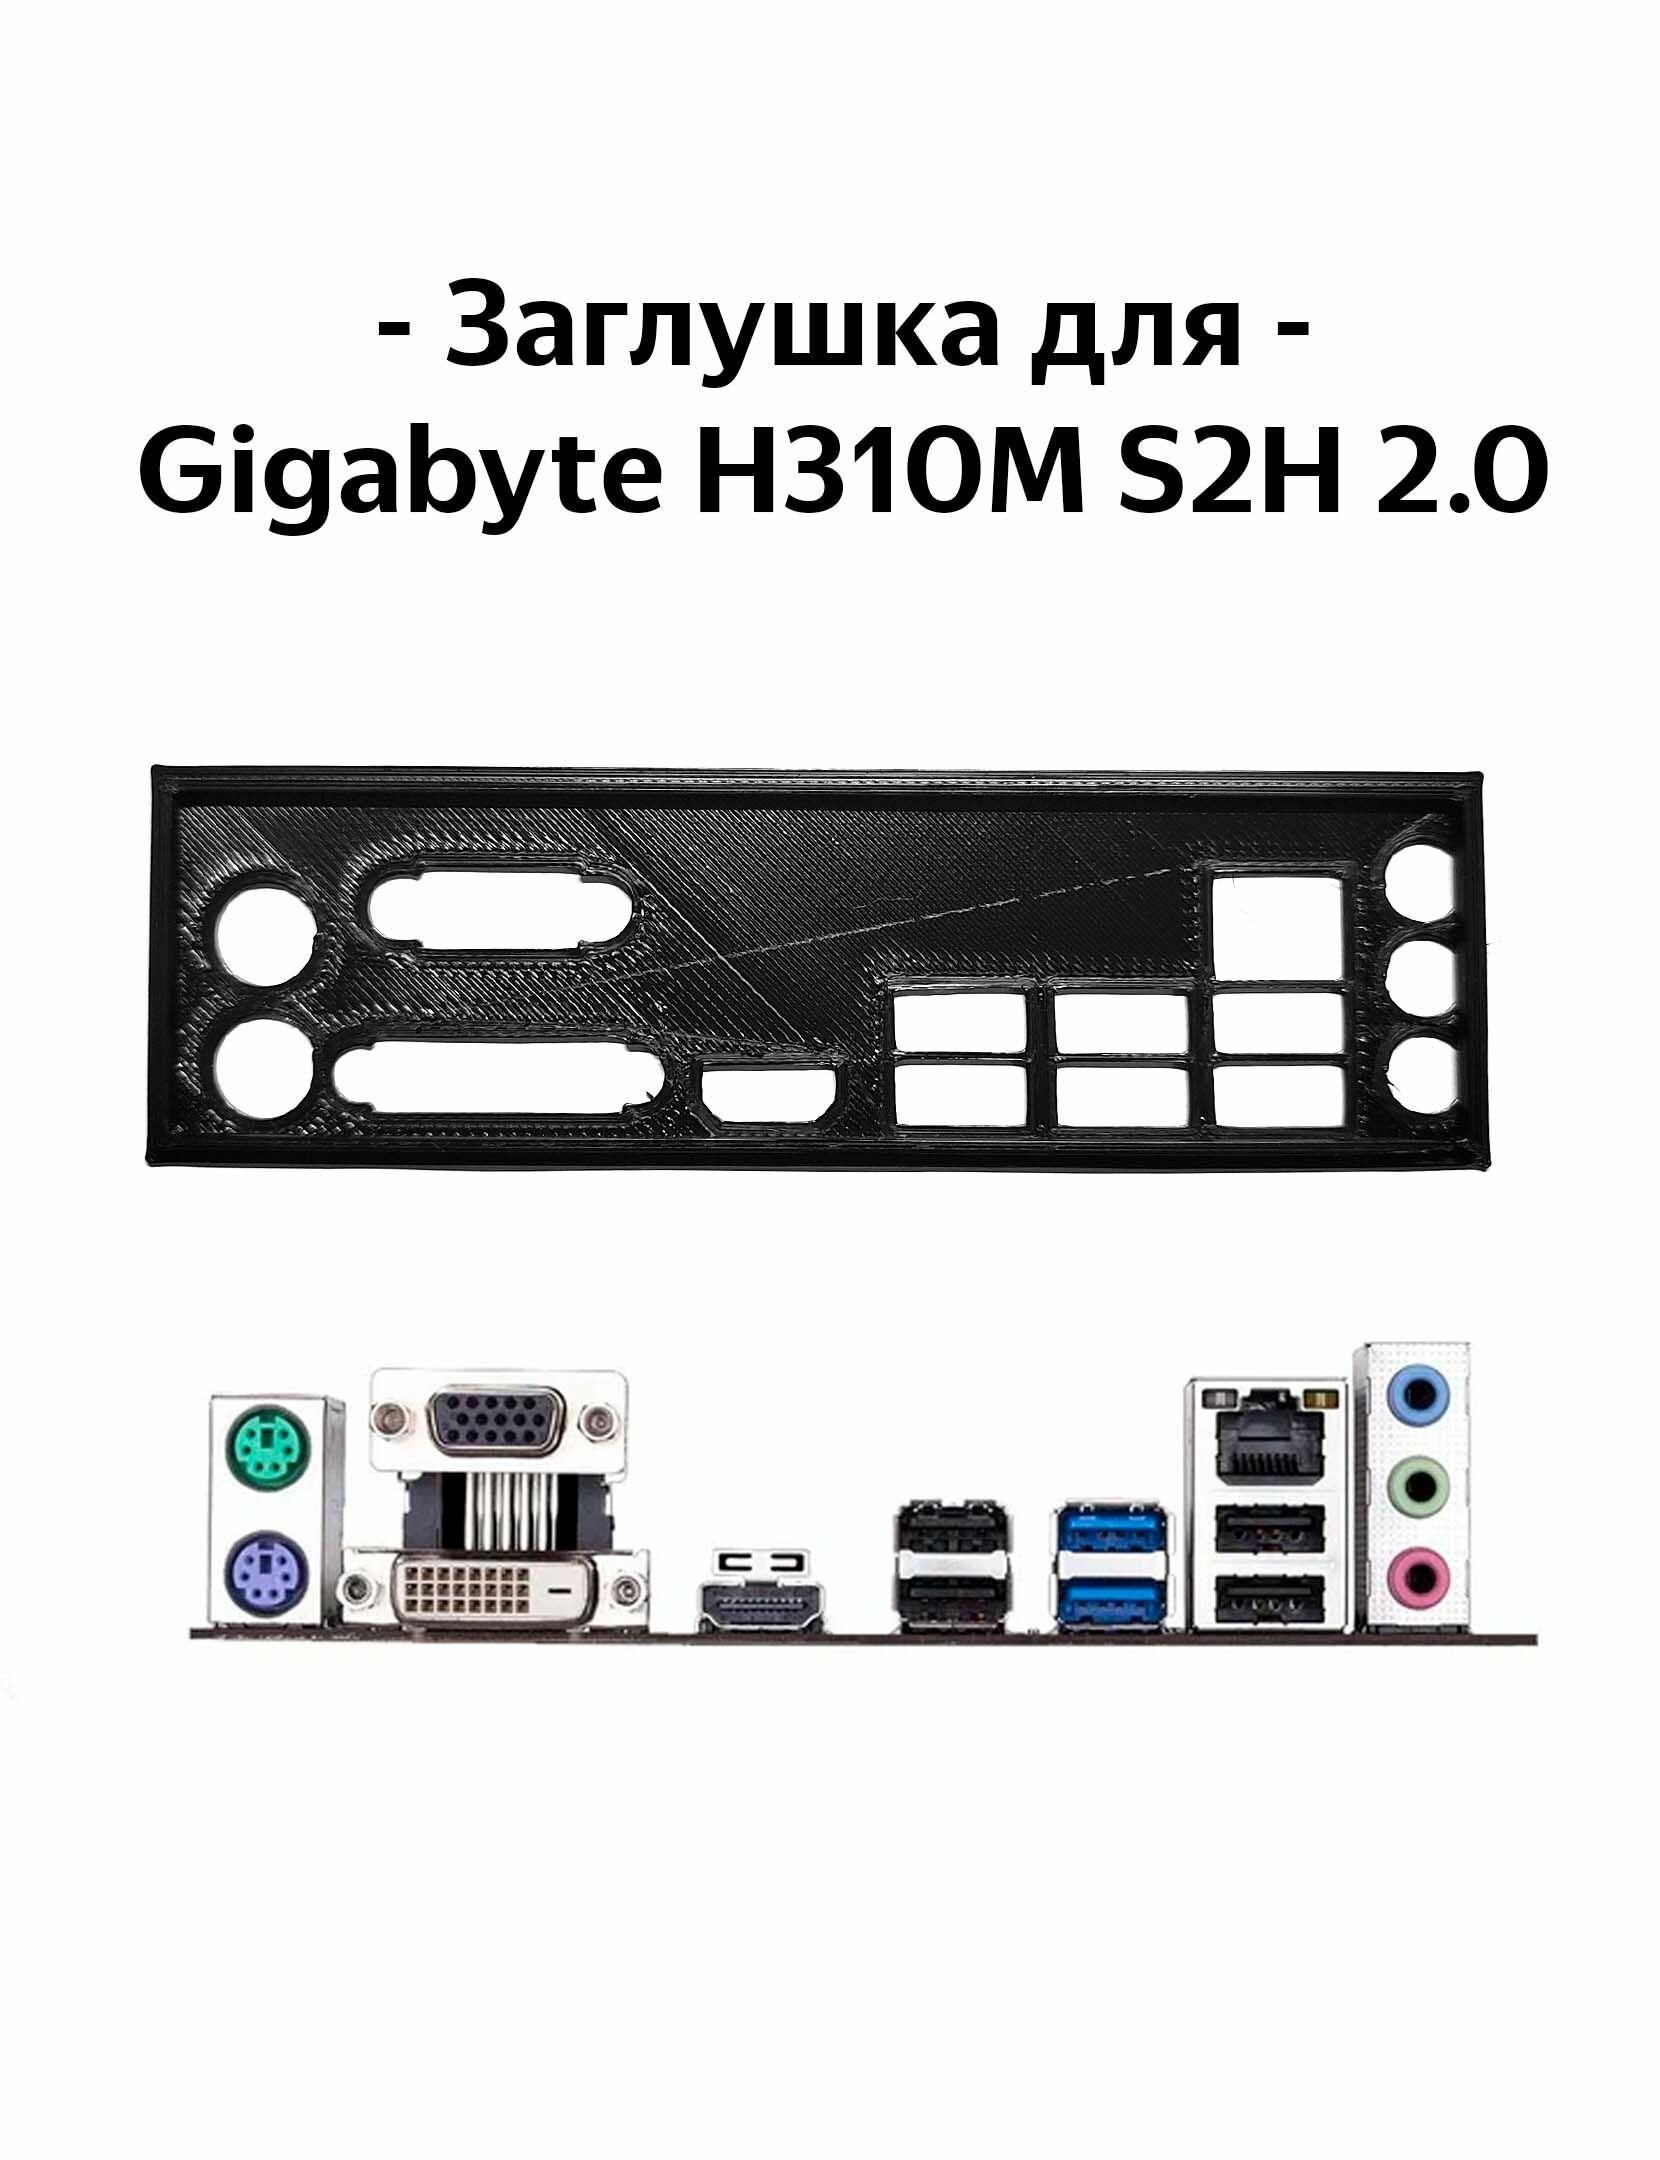 Пылезащитная заглушка, задняя панель для материнской платы Gigabyte H310M S2H 2.0